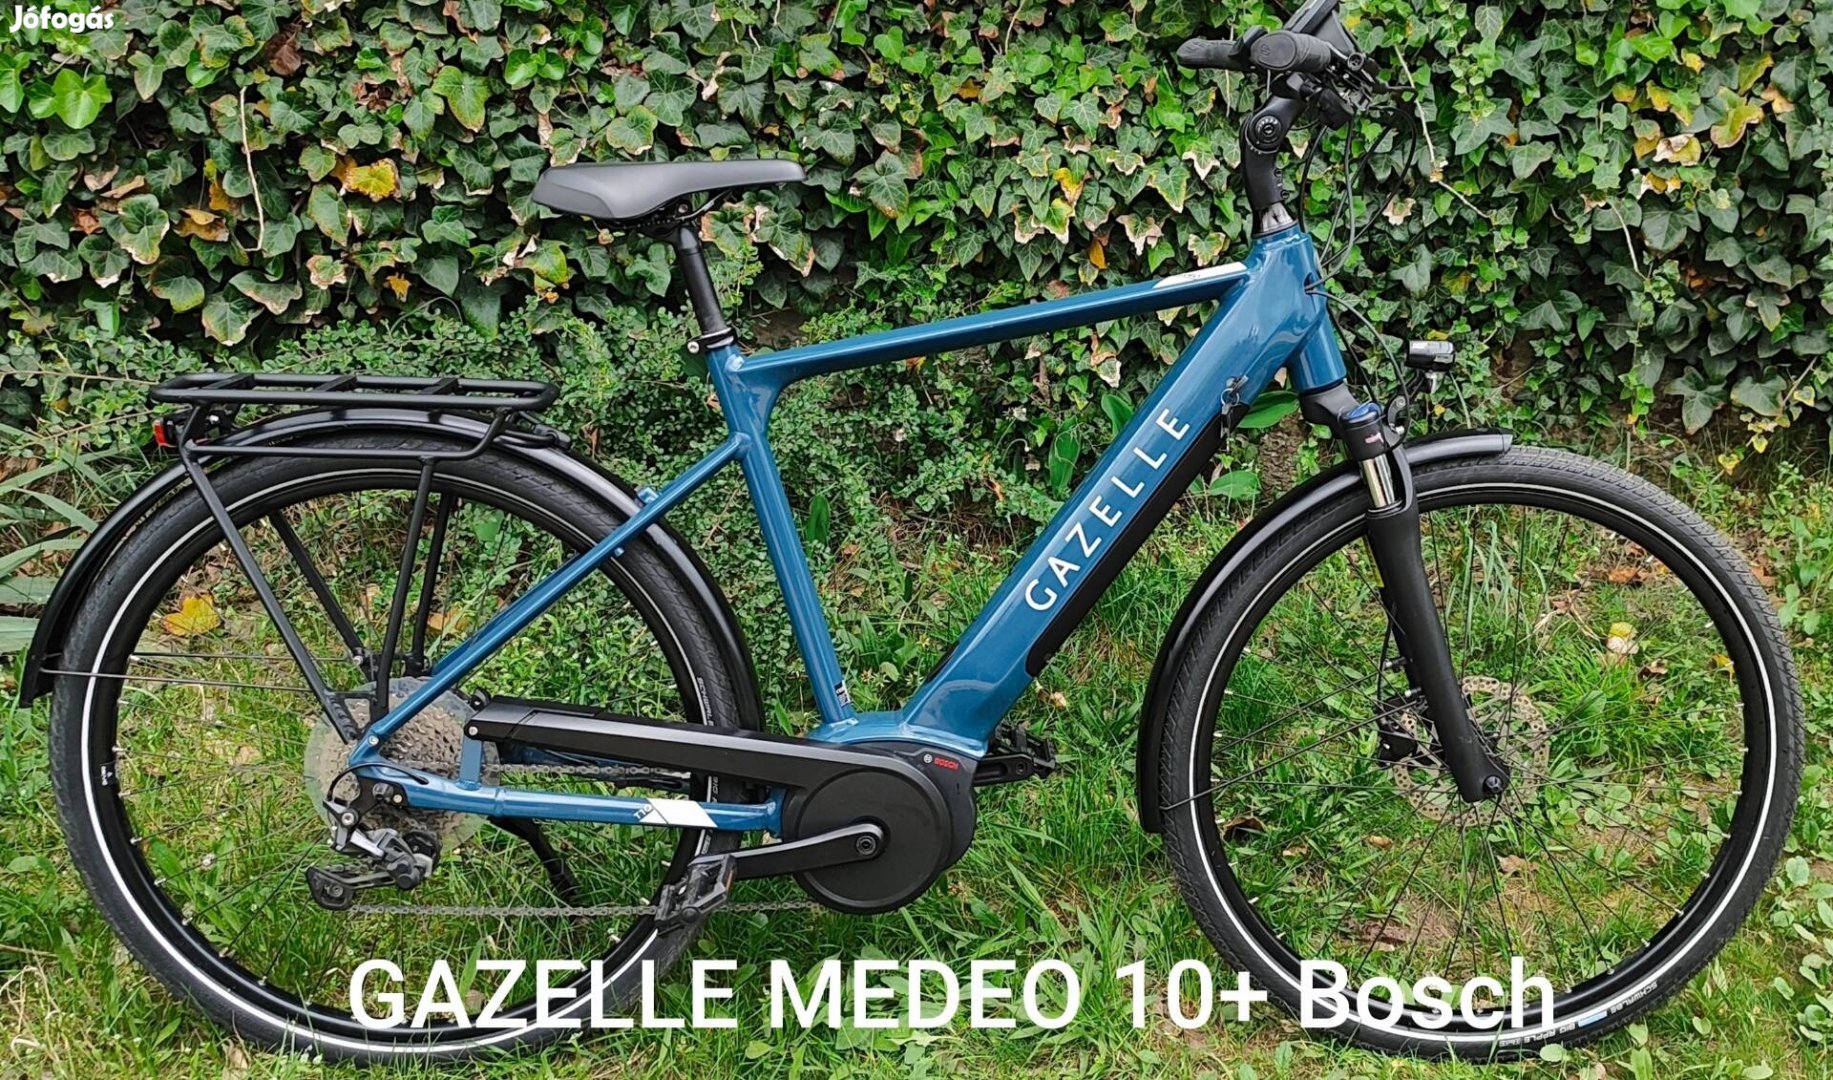 Gazelle Medeo 10+ Bosch